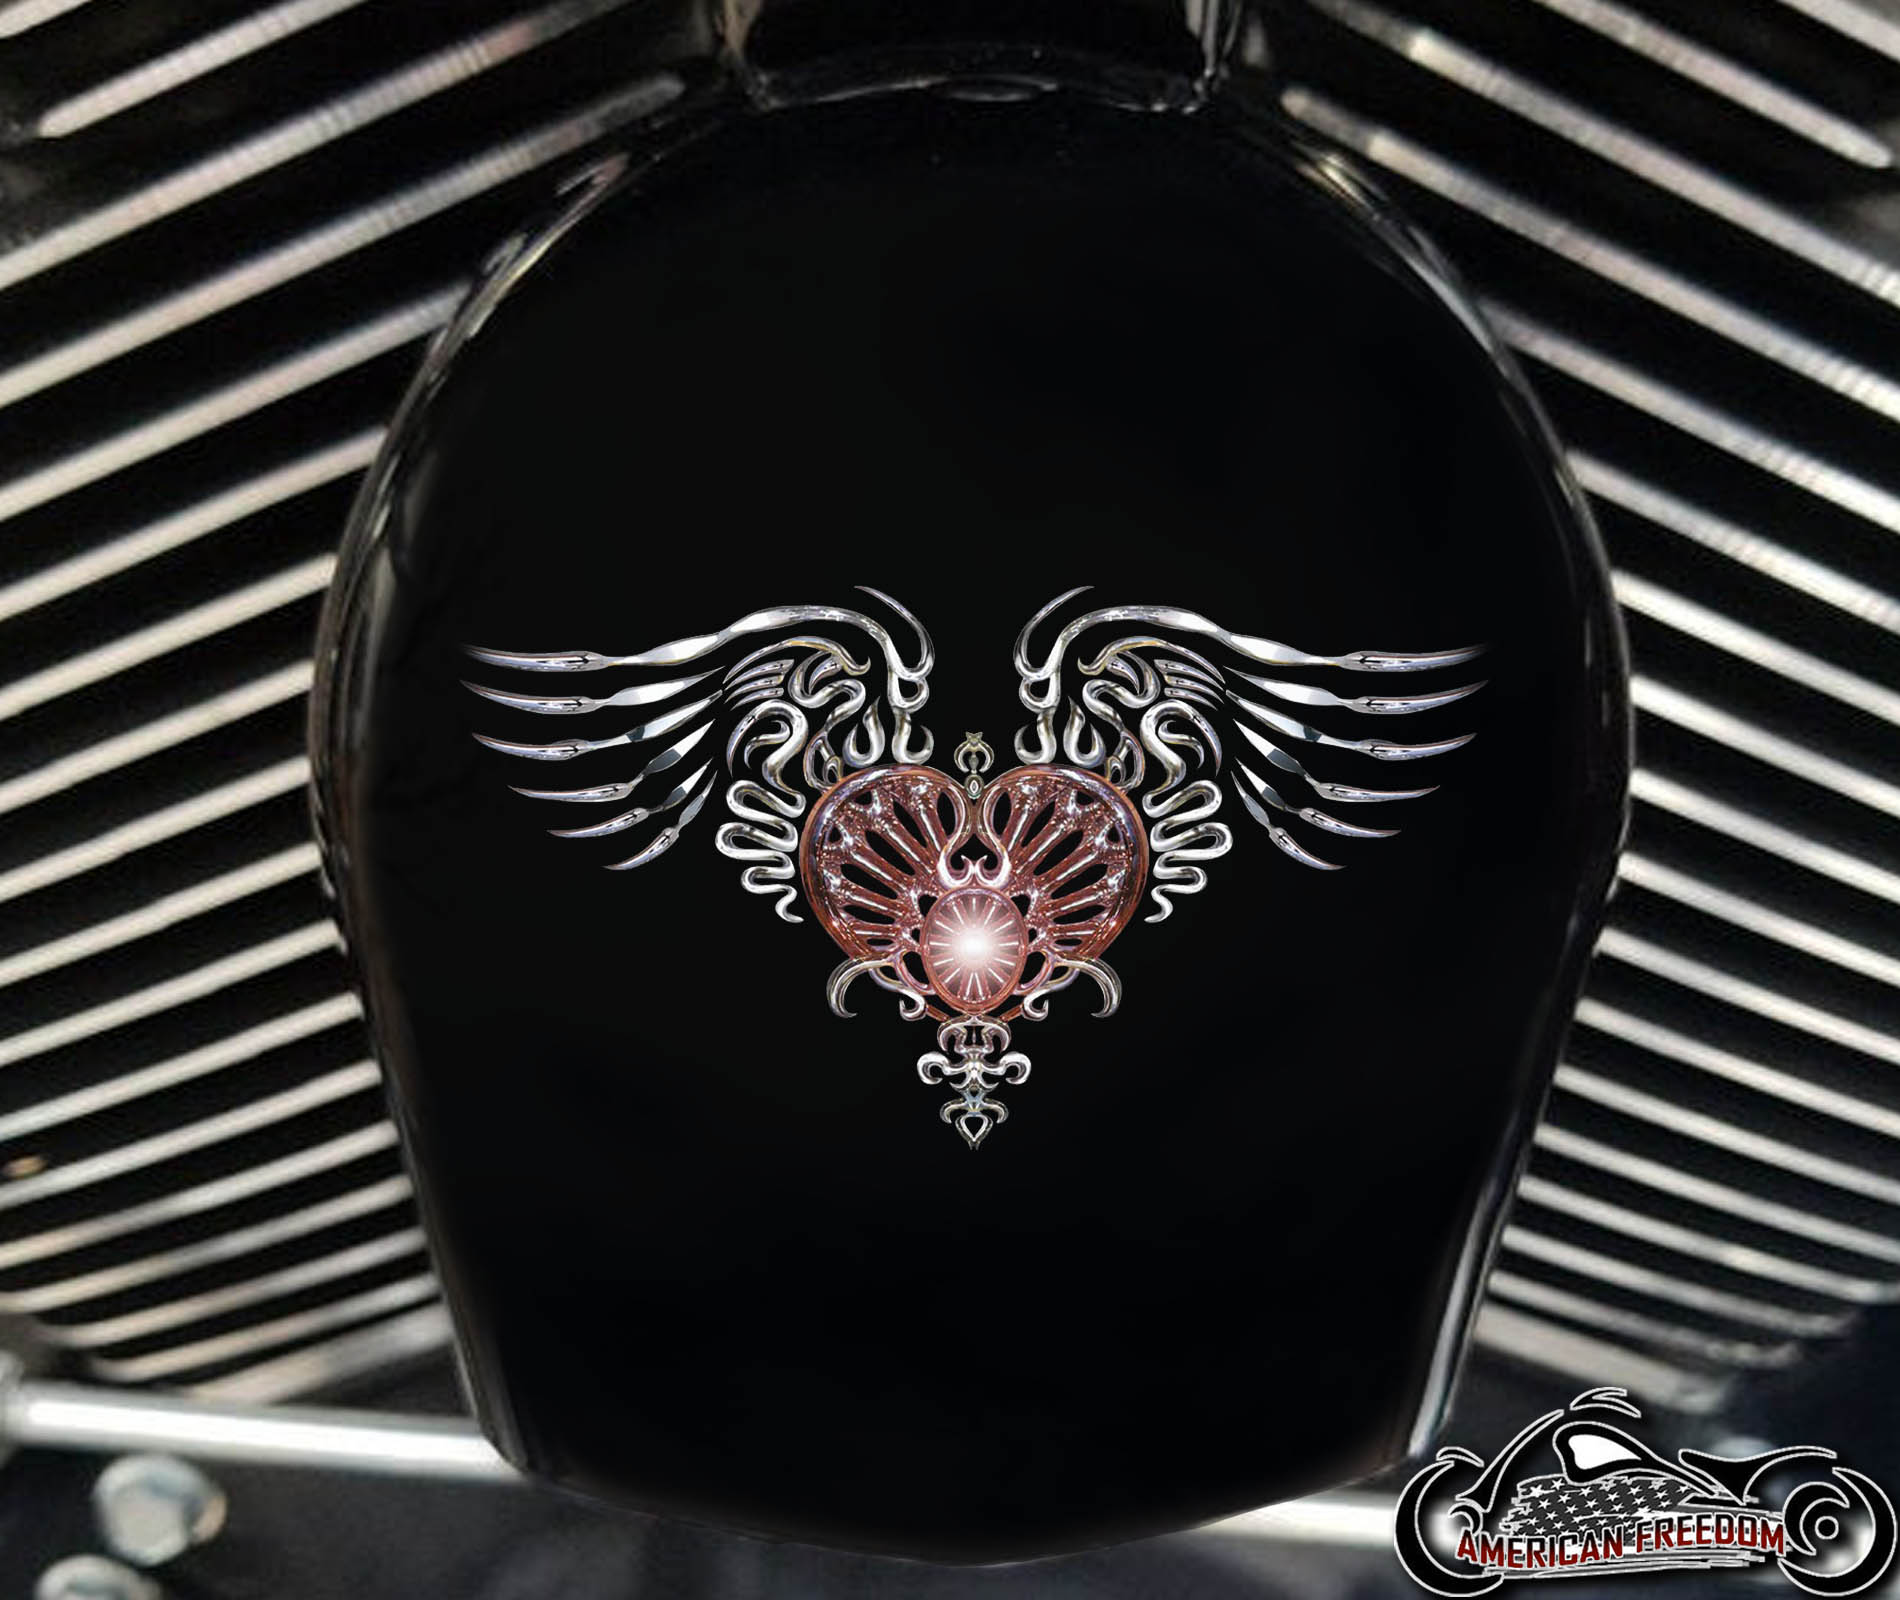 Custom Horn Cover - Heart Wings